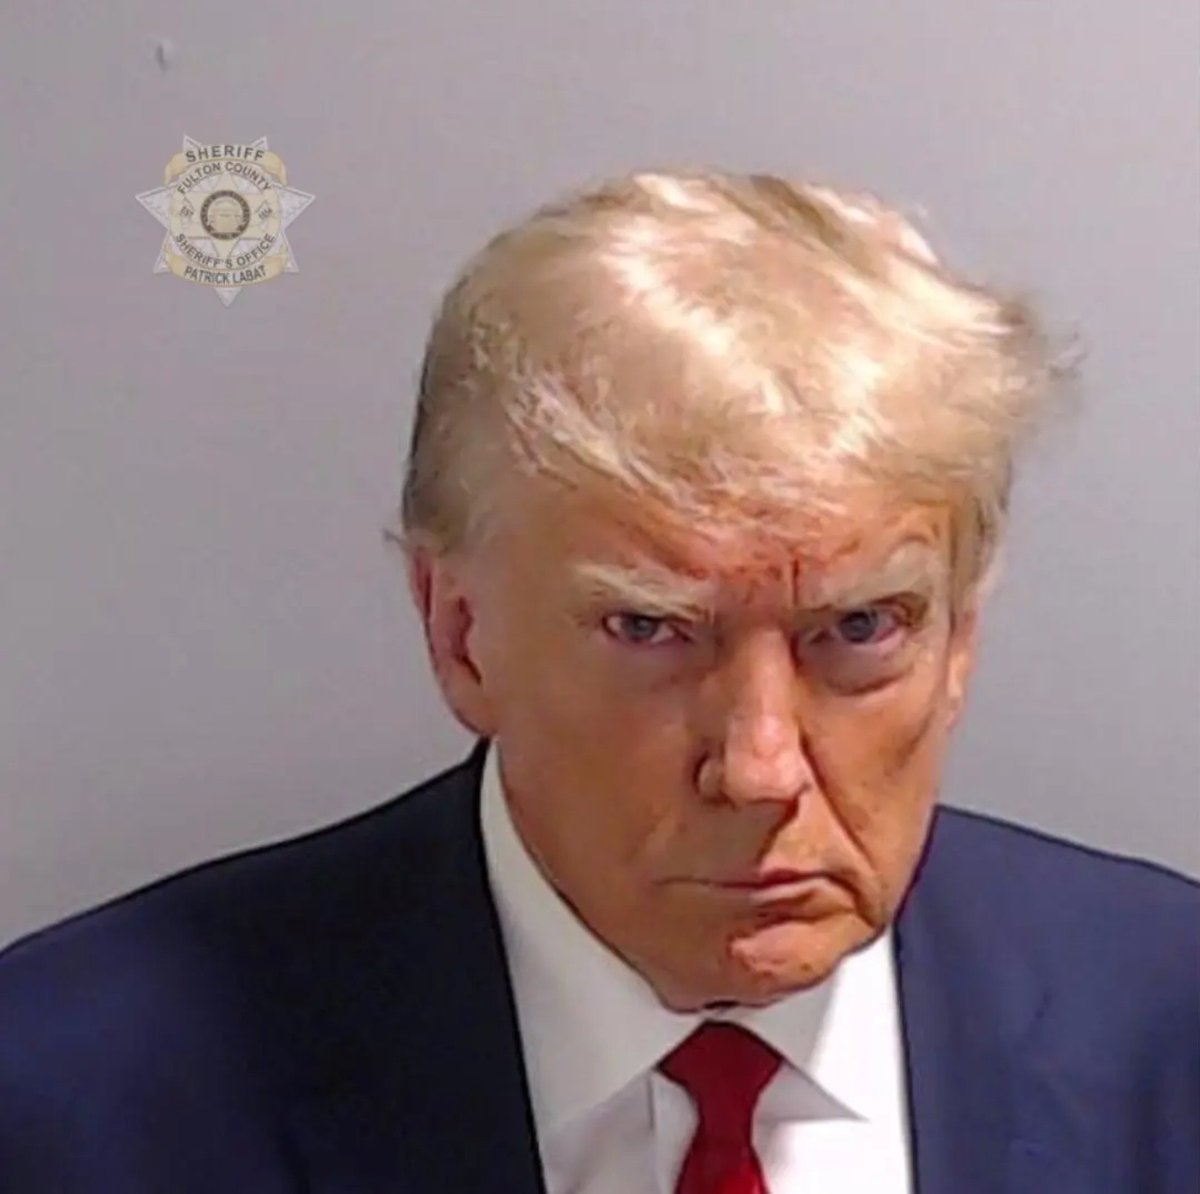 Le 'Mug shot' de Donald Trump!